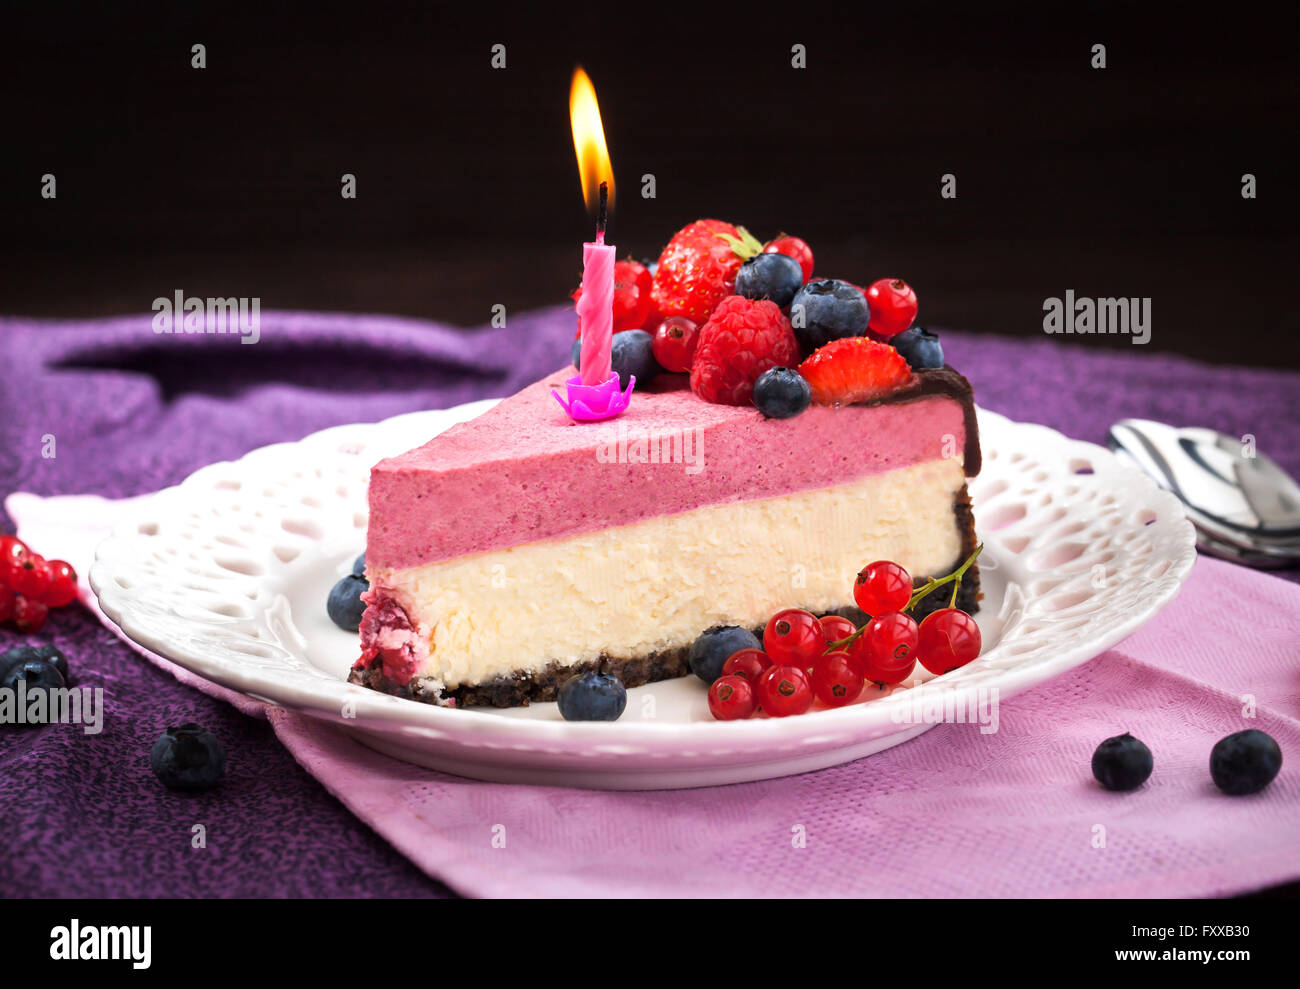 Partie de délicieux cheesecake framboise décorée avec des baies fraîches, chocolat et des bougies Banque D'Images